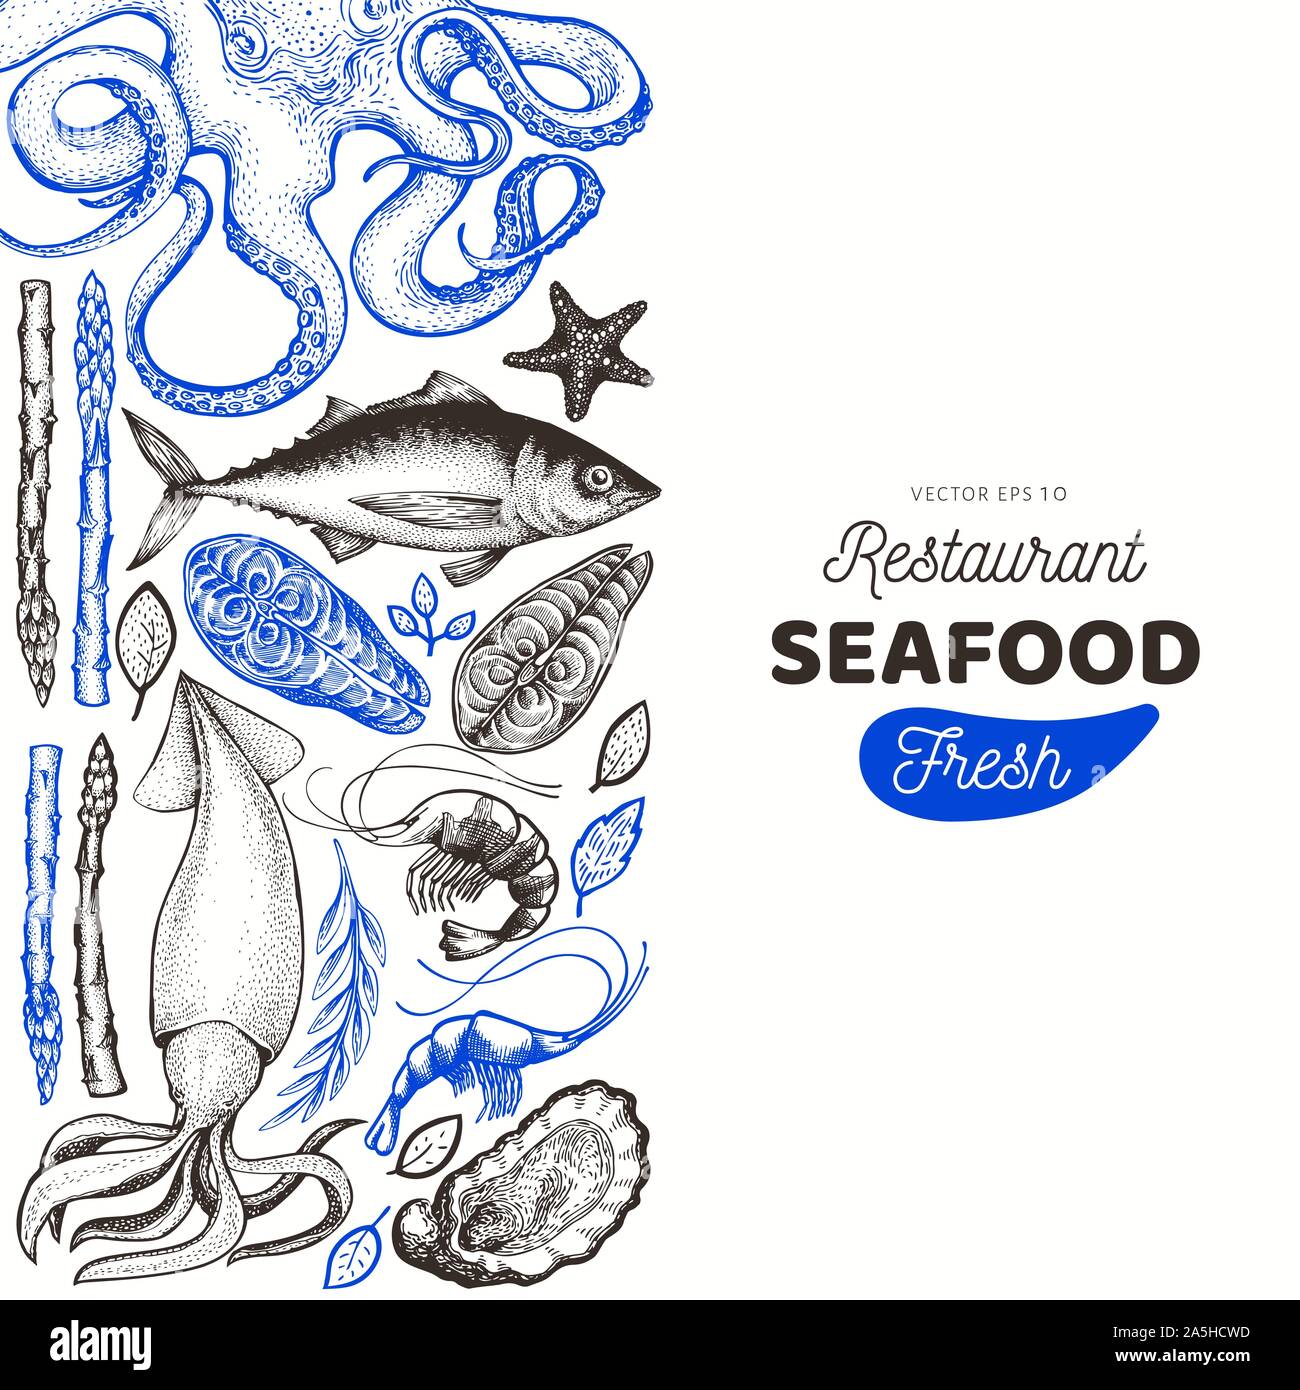 Modèle de conception de la mer et du poisson. Hand drawn vector illustration. Peut être utilisé pour la conception, l'emballage, des recettes menu, étiquette, le marché aux poissons, fruits de mer produit Illustration de Vecteur